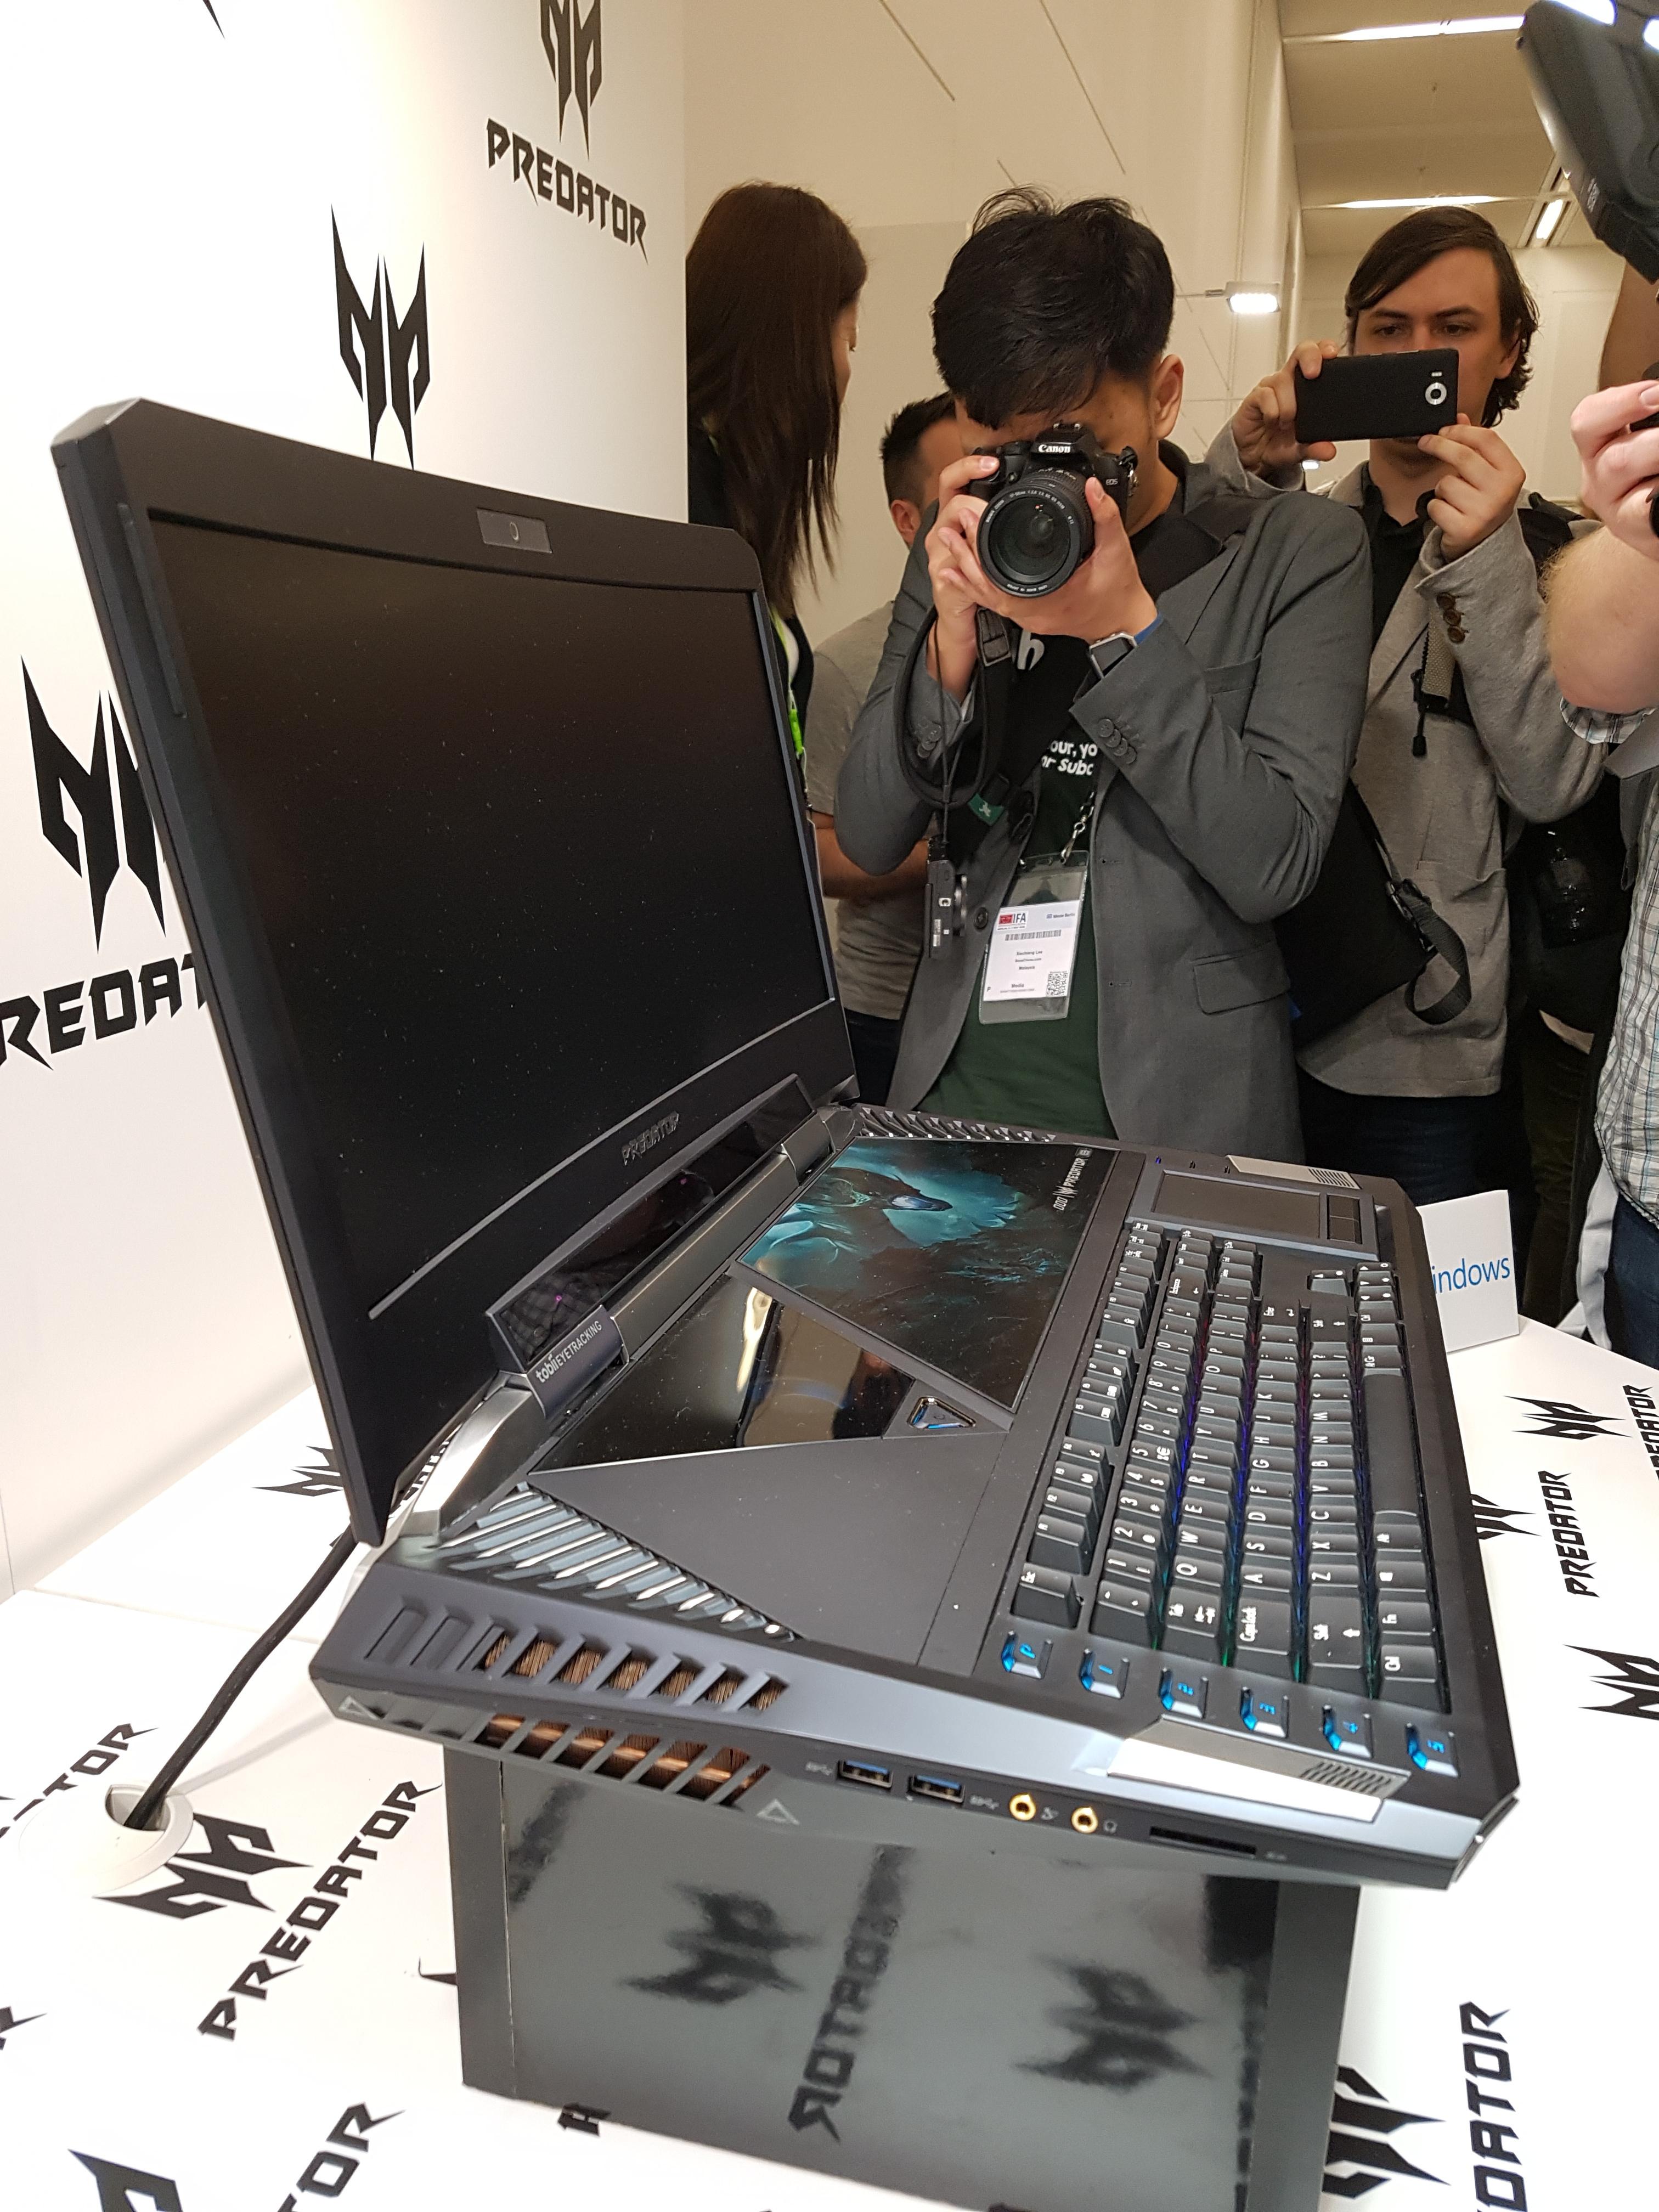 Det var stor interesse blant de fremmøtte da Acer viste frem verdens første bærbare med buet skjerm.